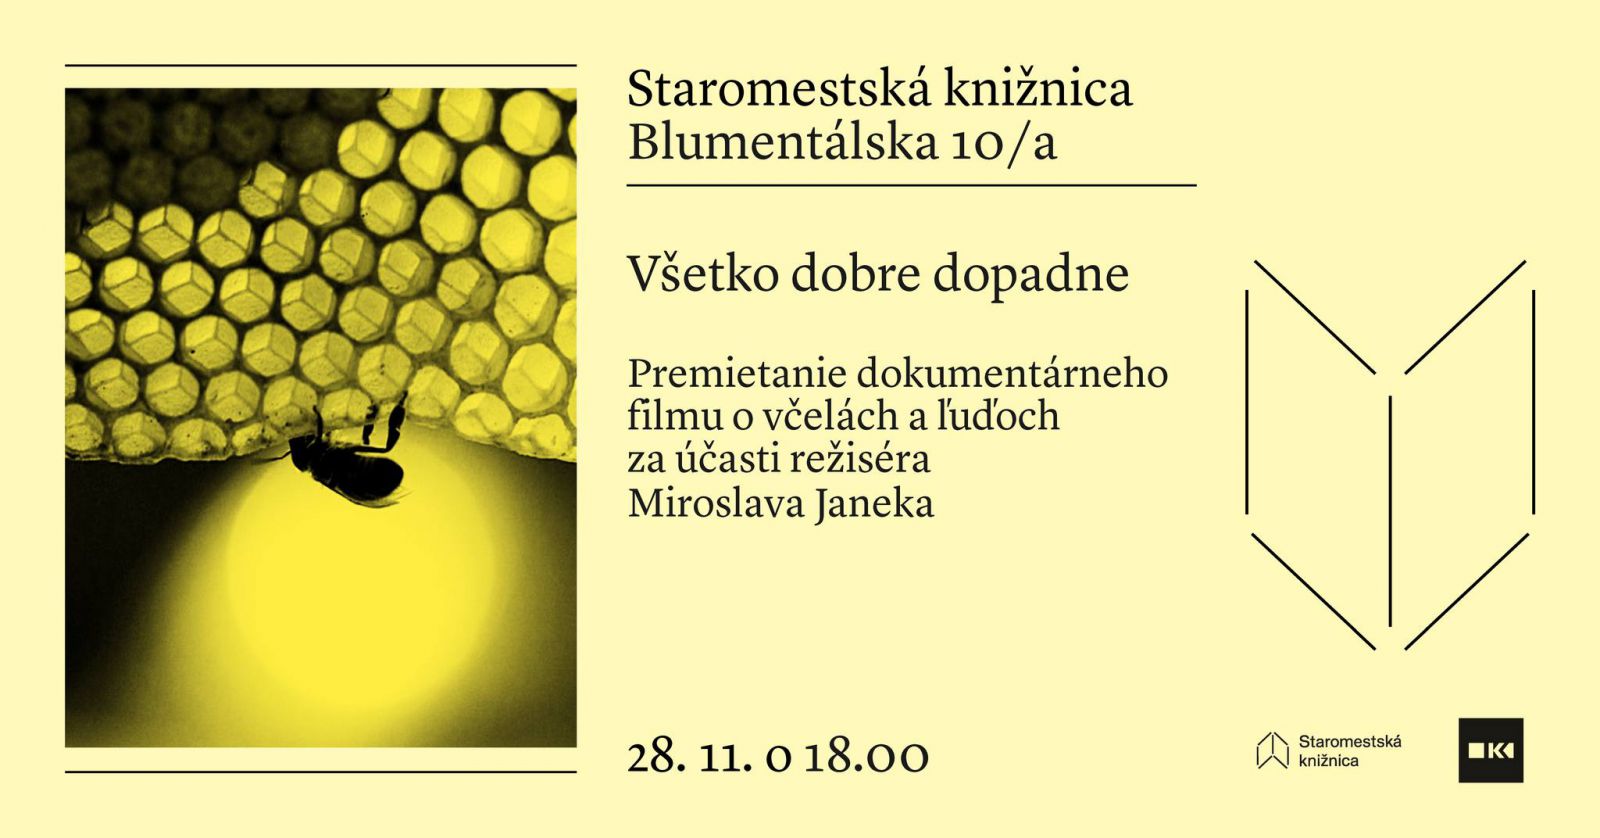 Premietanie dokumentárneho filmu Všetko dobre dopadne za účasti režiséra Miroslava Janeka - 28.11. o 18.00 na Blumentálskej 10/a